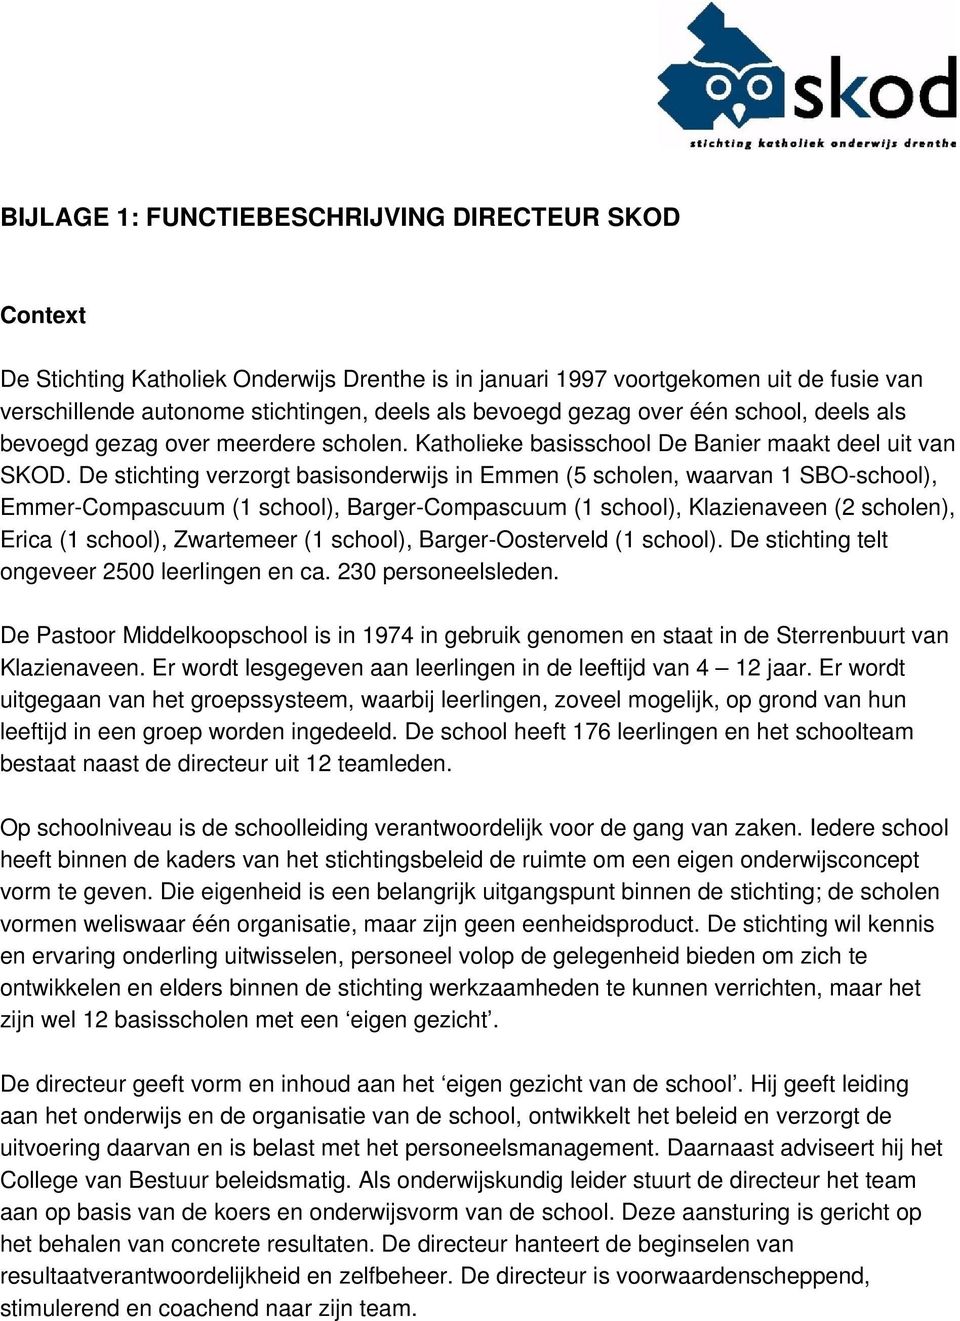 De stichting verzorgt basisonderwijs in Emmen (5 scholen, waarvan 1 SBO-school), Emmer-Compascuum (1 school), Barger-Compascuum (1 school), Klazienaveen (2 scholen), Erica (1 school), Zwartemeer (1